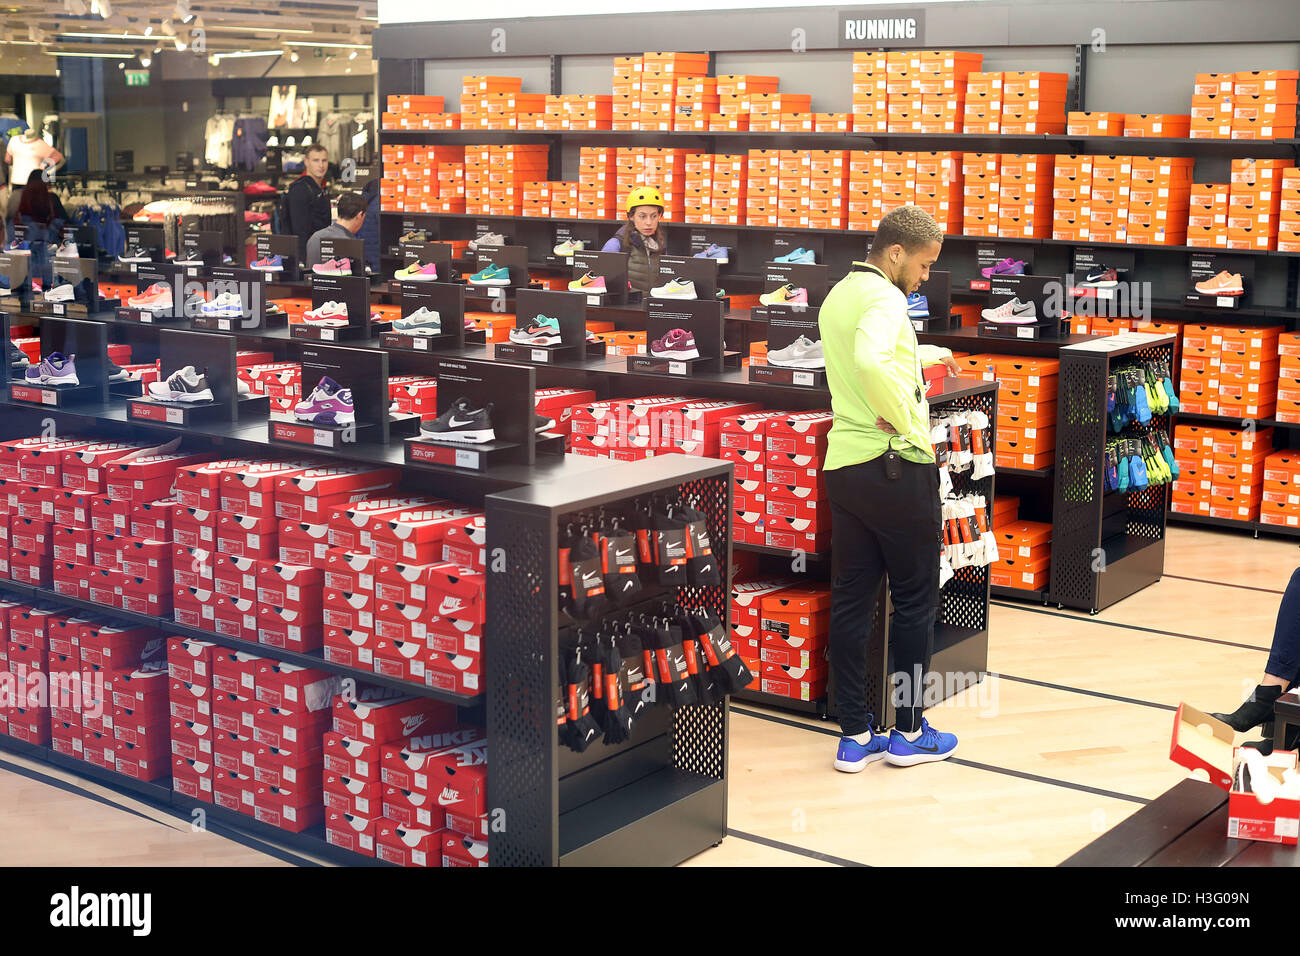 Taller de formación de formadores zapatos Nike las cajas de zapatos  Fotografía de stock - Alamy